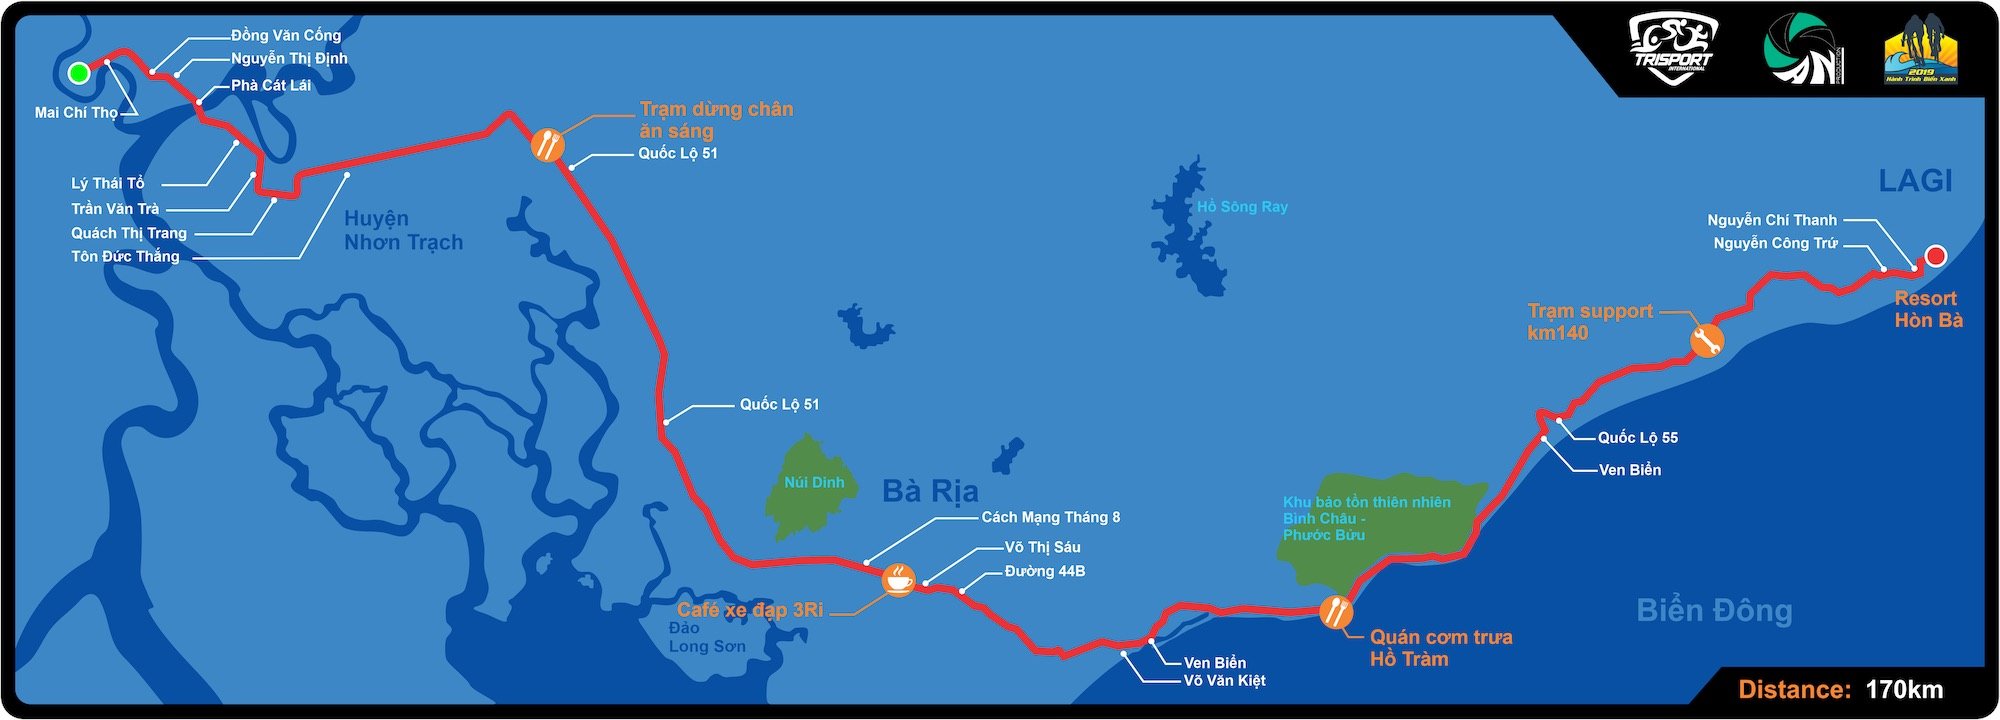 Kí sự Hành Trình Biển Xanh 2019 (15/06/2019) - Tàn bạo quá sức! (175km) - map htbx final